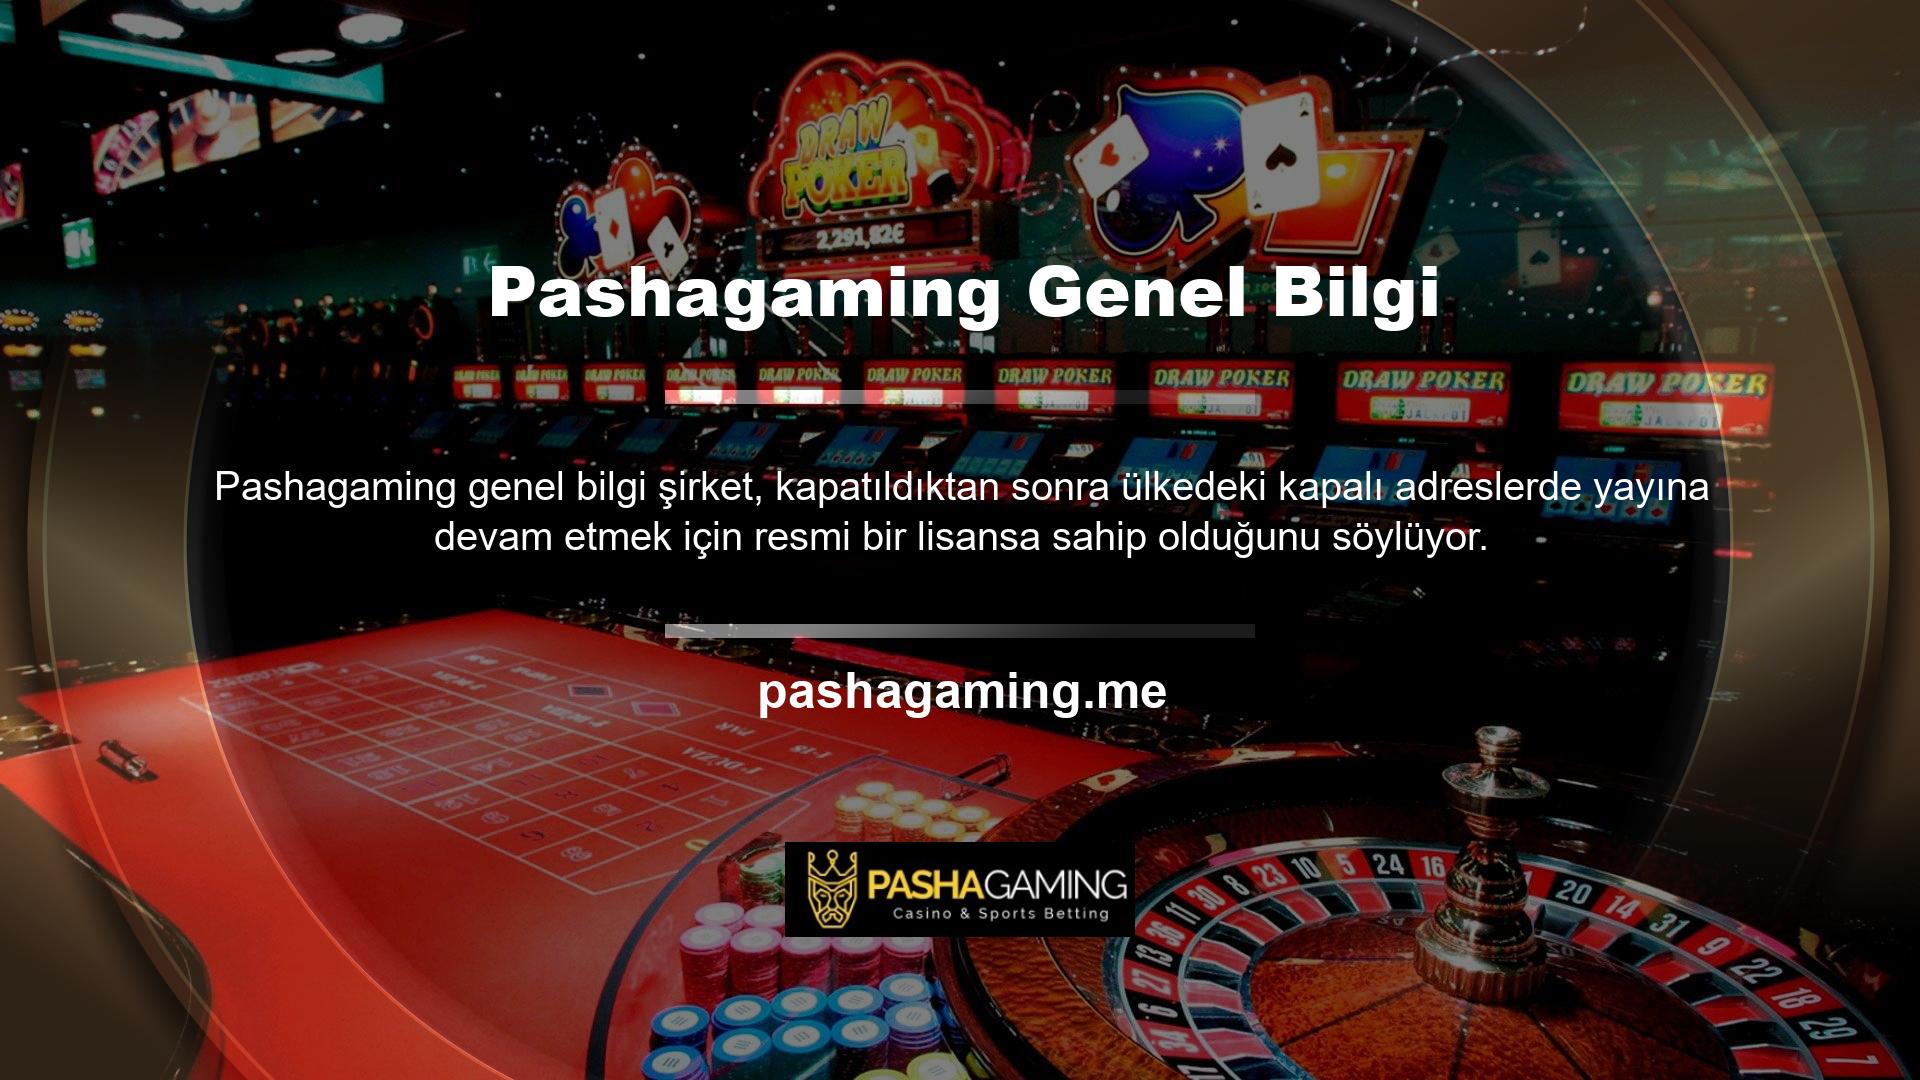 Casino oyunları oynayarak para kazanmak isteyen bahis tutkunları yeni adreslerini girerek Pashagaming yeni adres sitesine giriş yapabilirler ve Pashagaming bahis sitesi transfer seçenekleri web sitesinde açıkça gösterilecektir